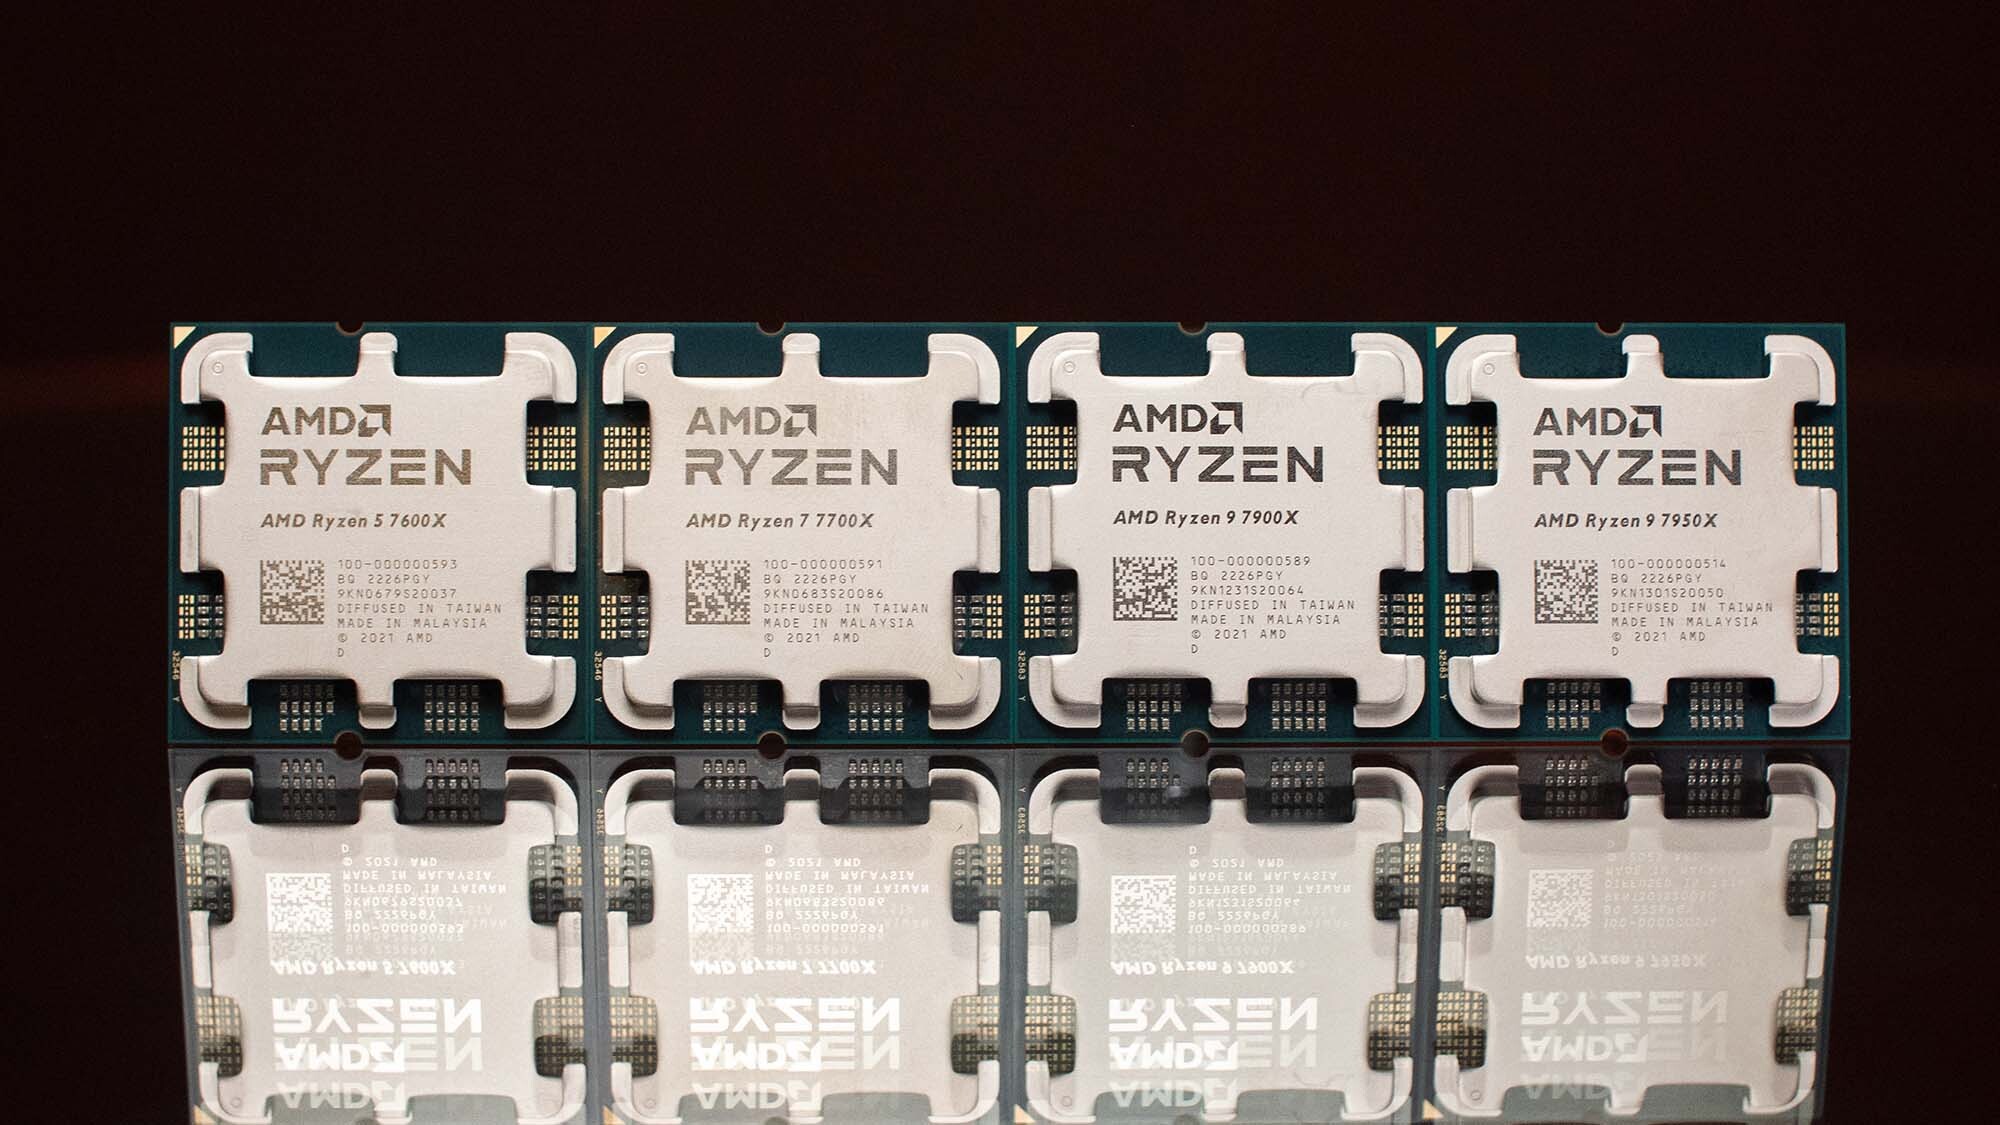 Утечка AMD Ryzen 9 7900X предполагает впечатляющий 12-ядерный процессор